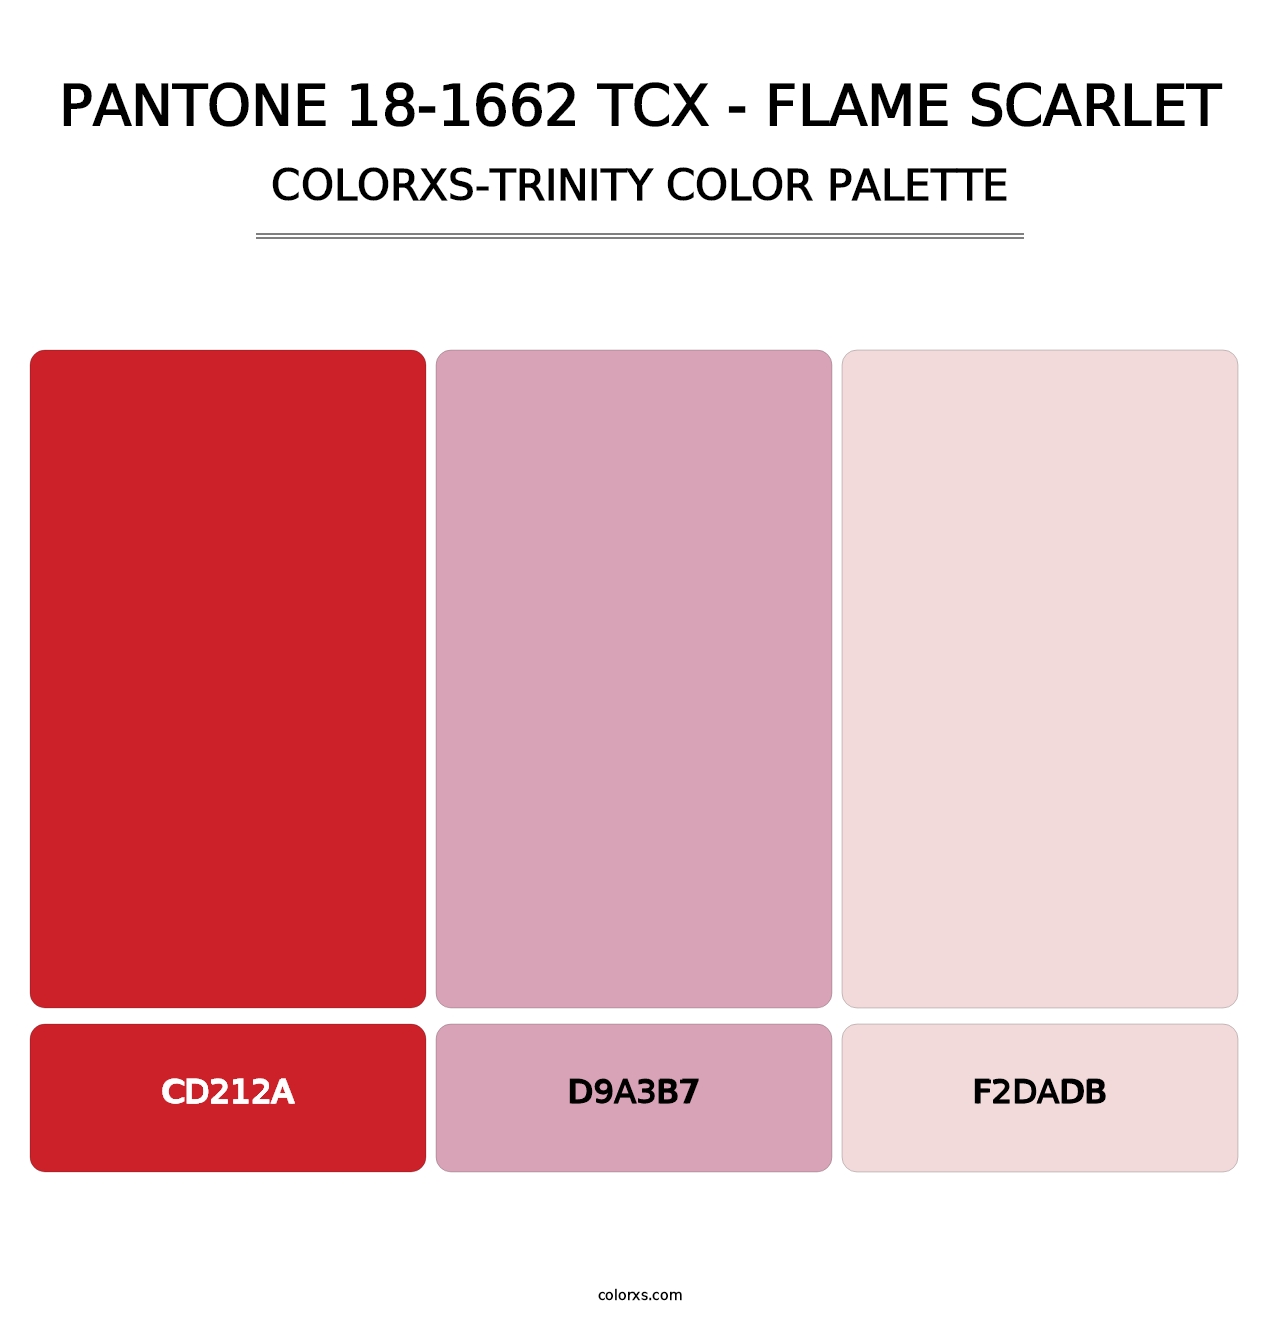 PANTONE 18-1662 TCX - Flame Scarlet - Colorxs Trinity Palette